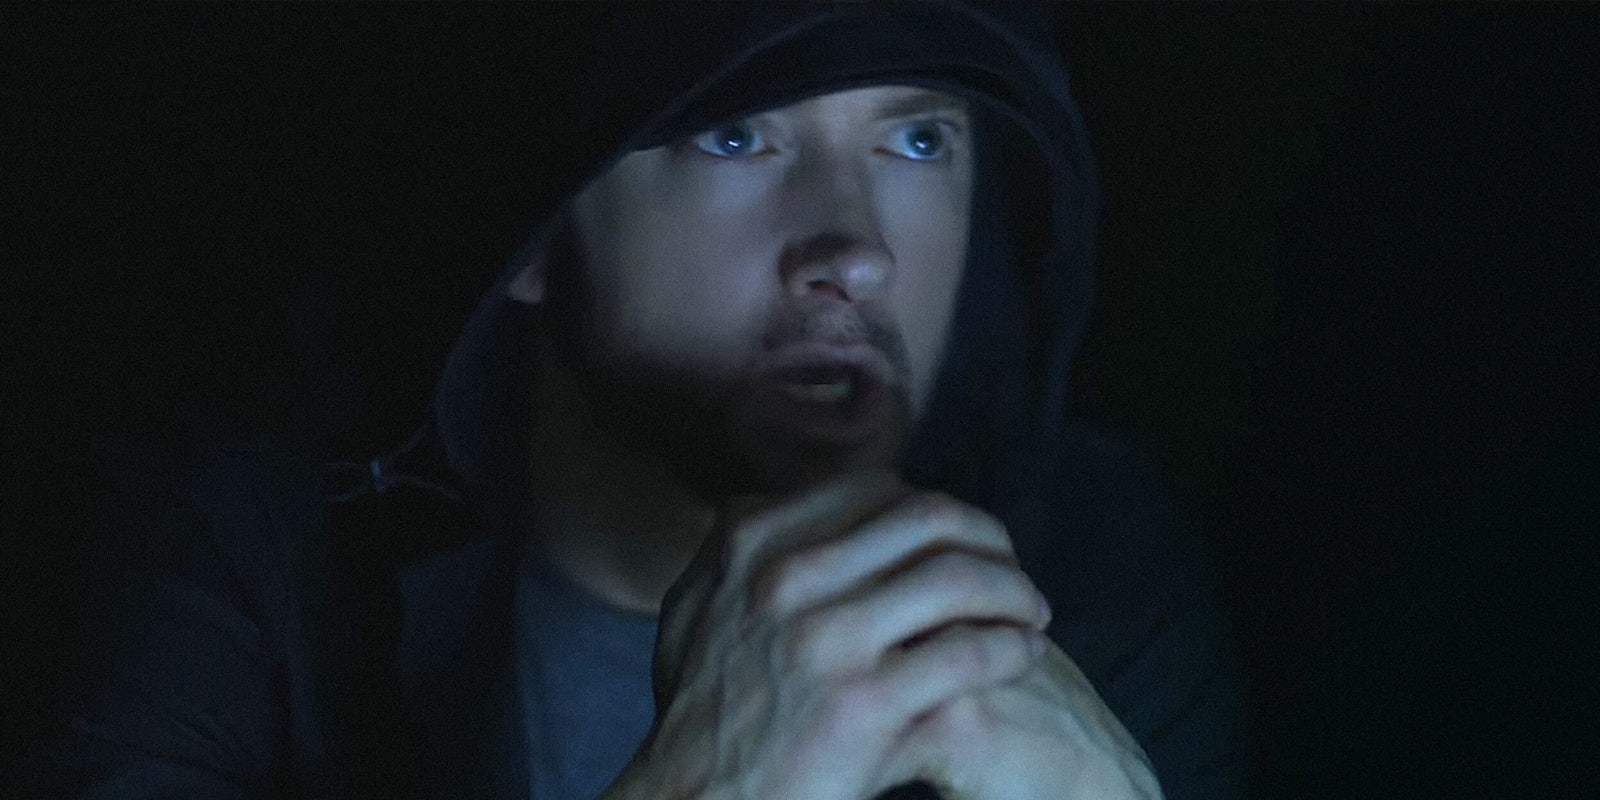 Eminem sitting in the dark